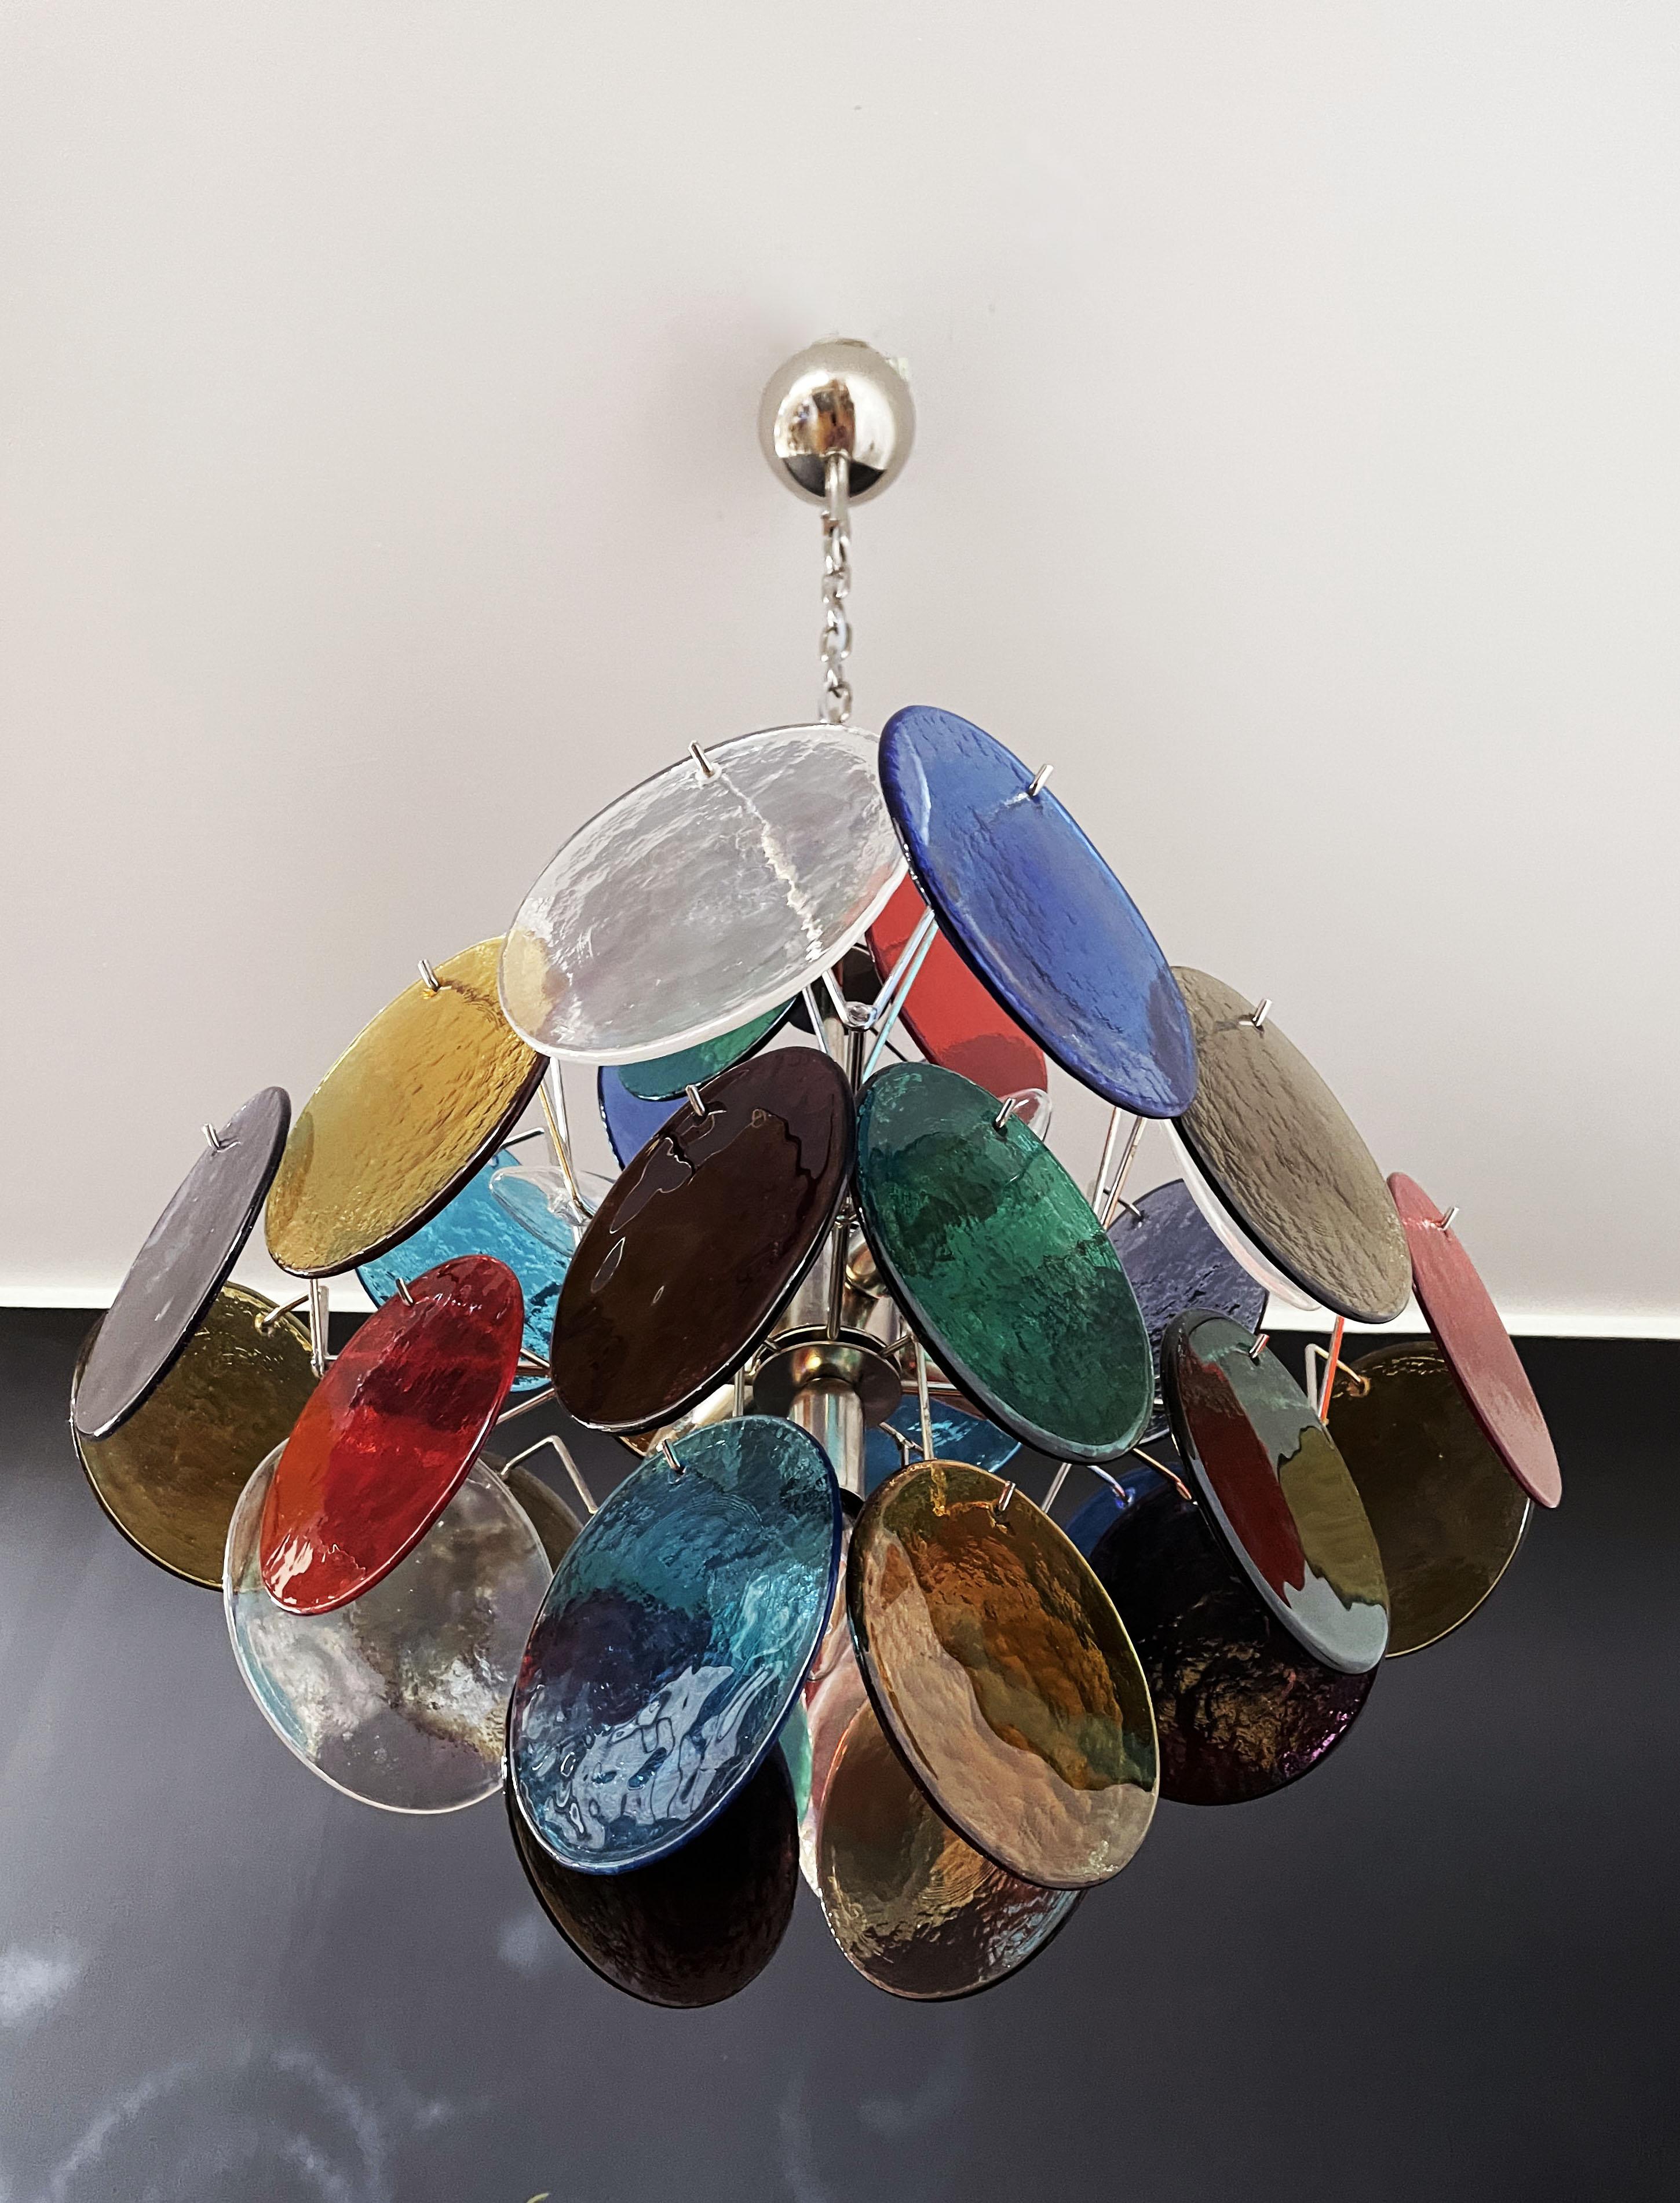 Vintage Italian Murano chandelier - 36 multicolored disks In Good Condition For Sale In Gaiarine Frazione Francenigo (TV), IT